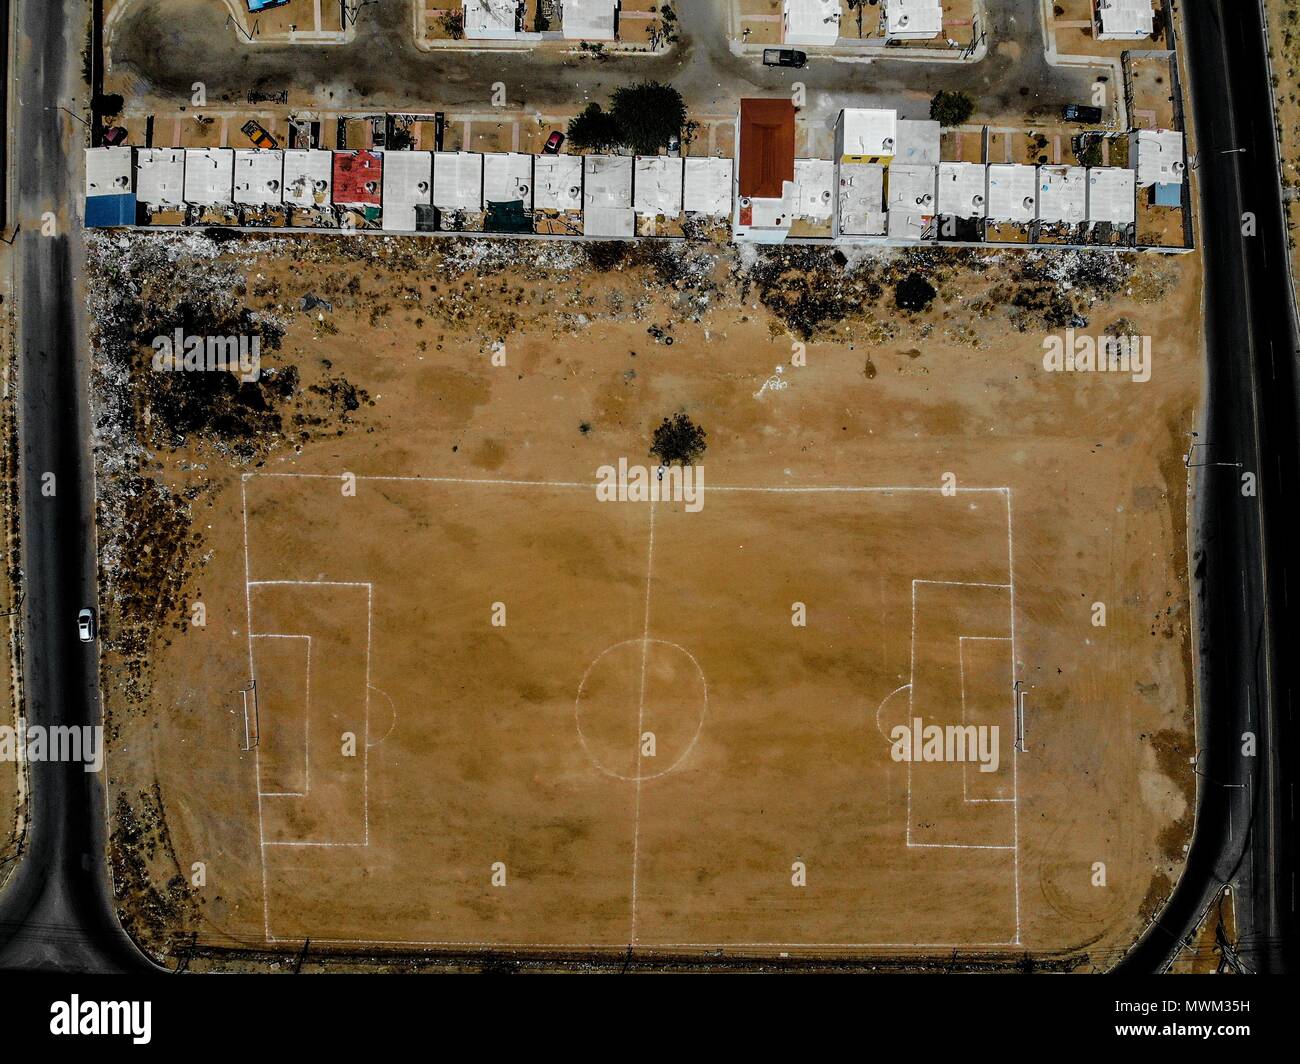 Vista aerea del campo deportivo, Cancha de Futbol de terraceria en el norte de Hermosillo. Colonia Pueblitos. Bulevar Solidaridad finale. Complejo dep Foto Stock